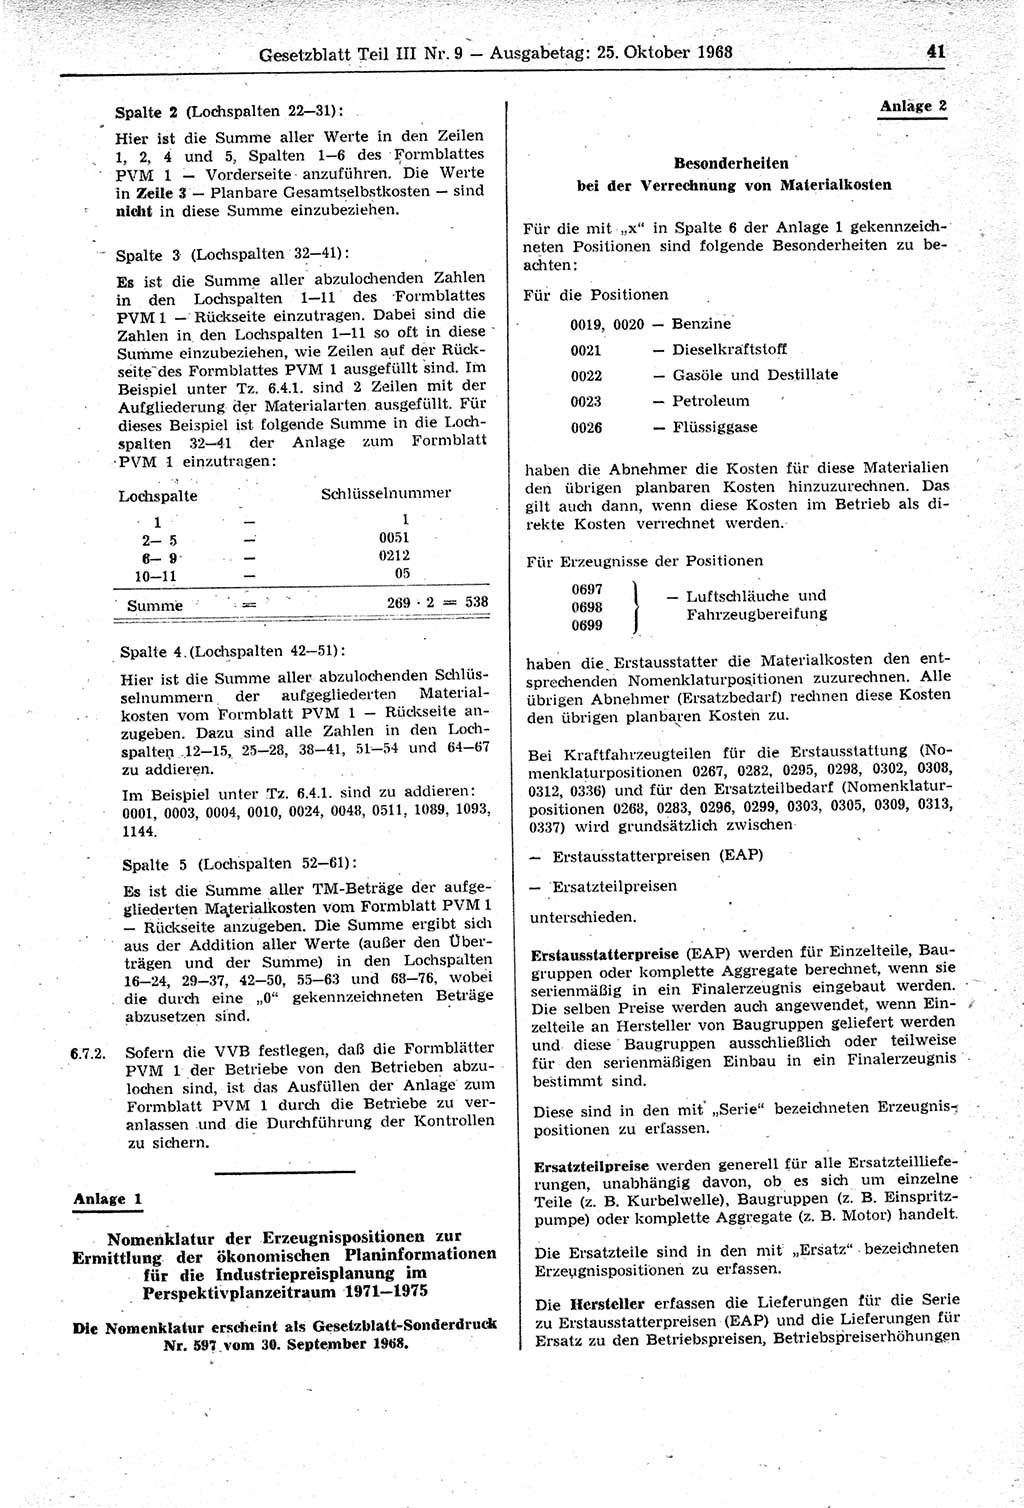 Gesetzblatt (GBl.) der Deutschen Demokratischen Republik (DDR) Teil ⅠⅠⅠ 1968, Seite 41 (GBl. DDR ⅠⅠⅠ 1968, S. 41)